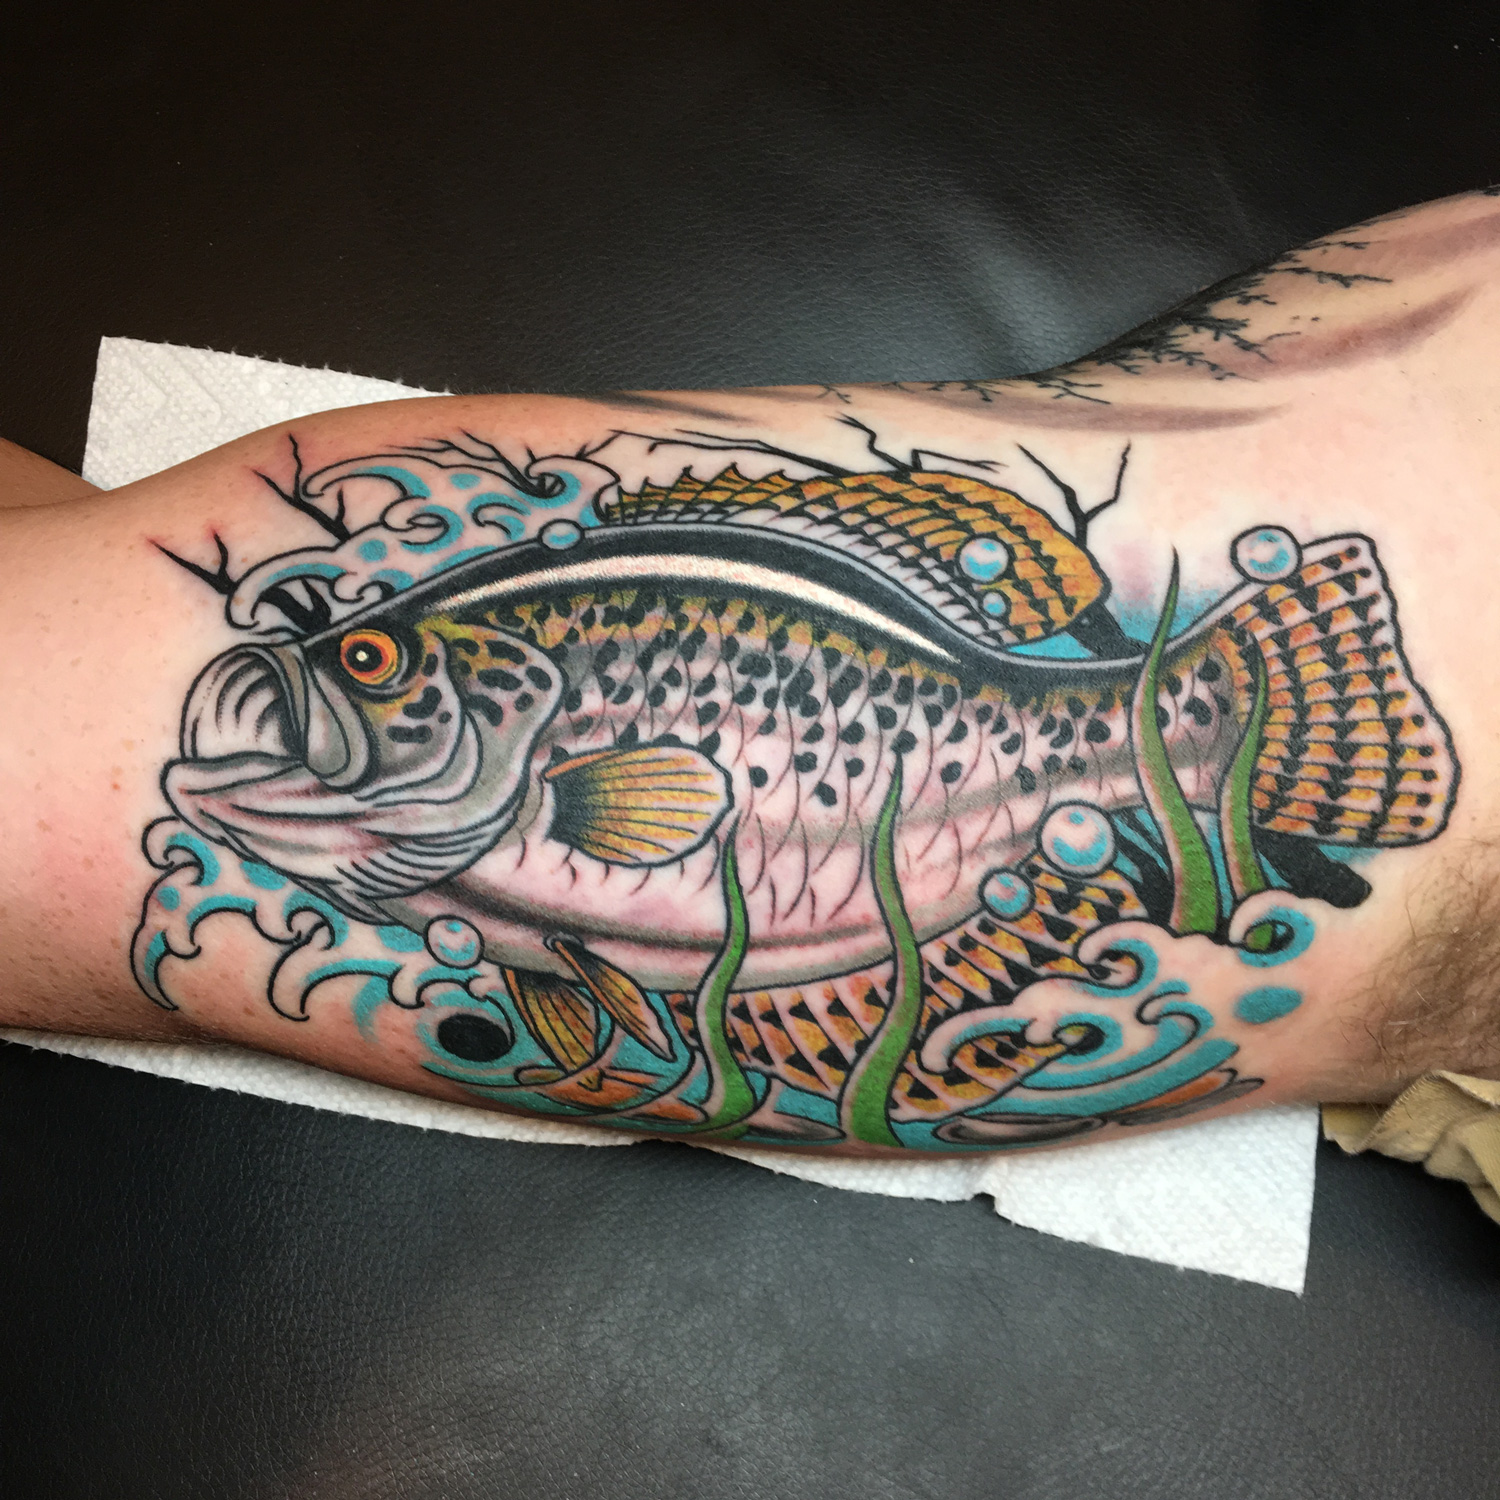 Joker Fish Tattoo - Best Tattoo Ideas Gallery